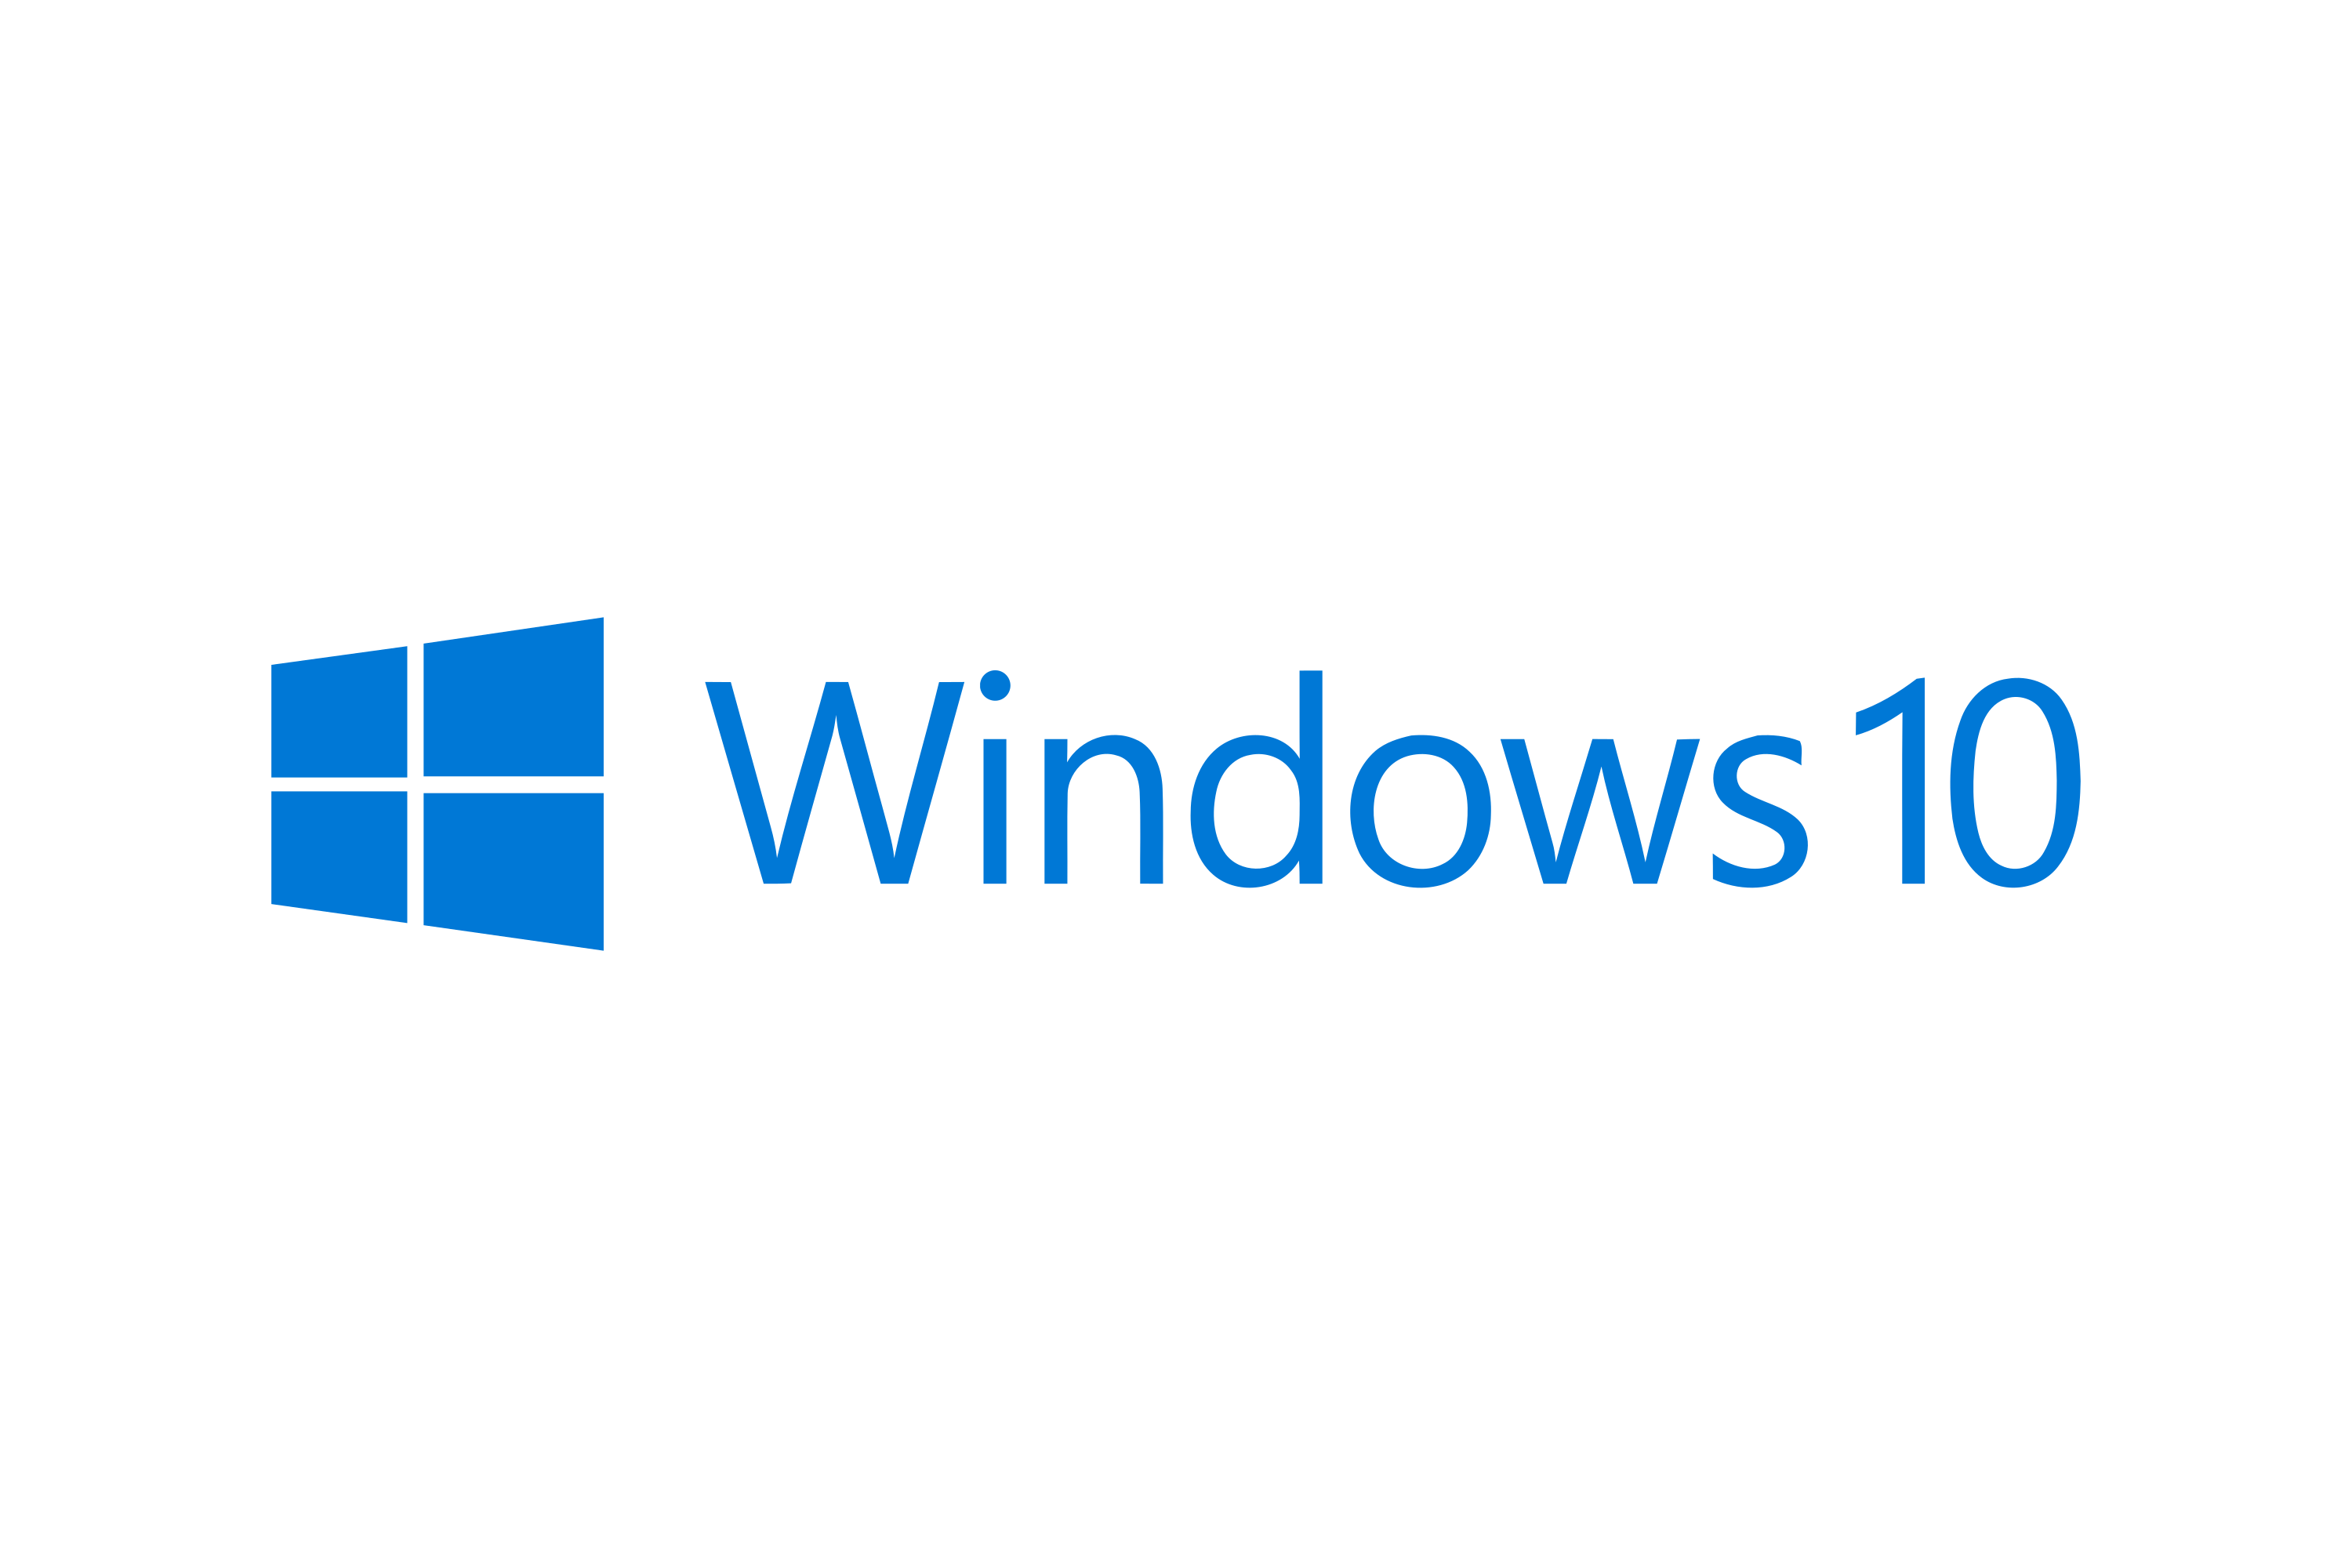 刚装好的 Windows 10 显示无法连接到Internet，但是能正常上网